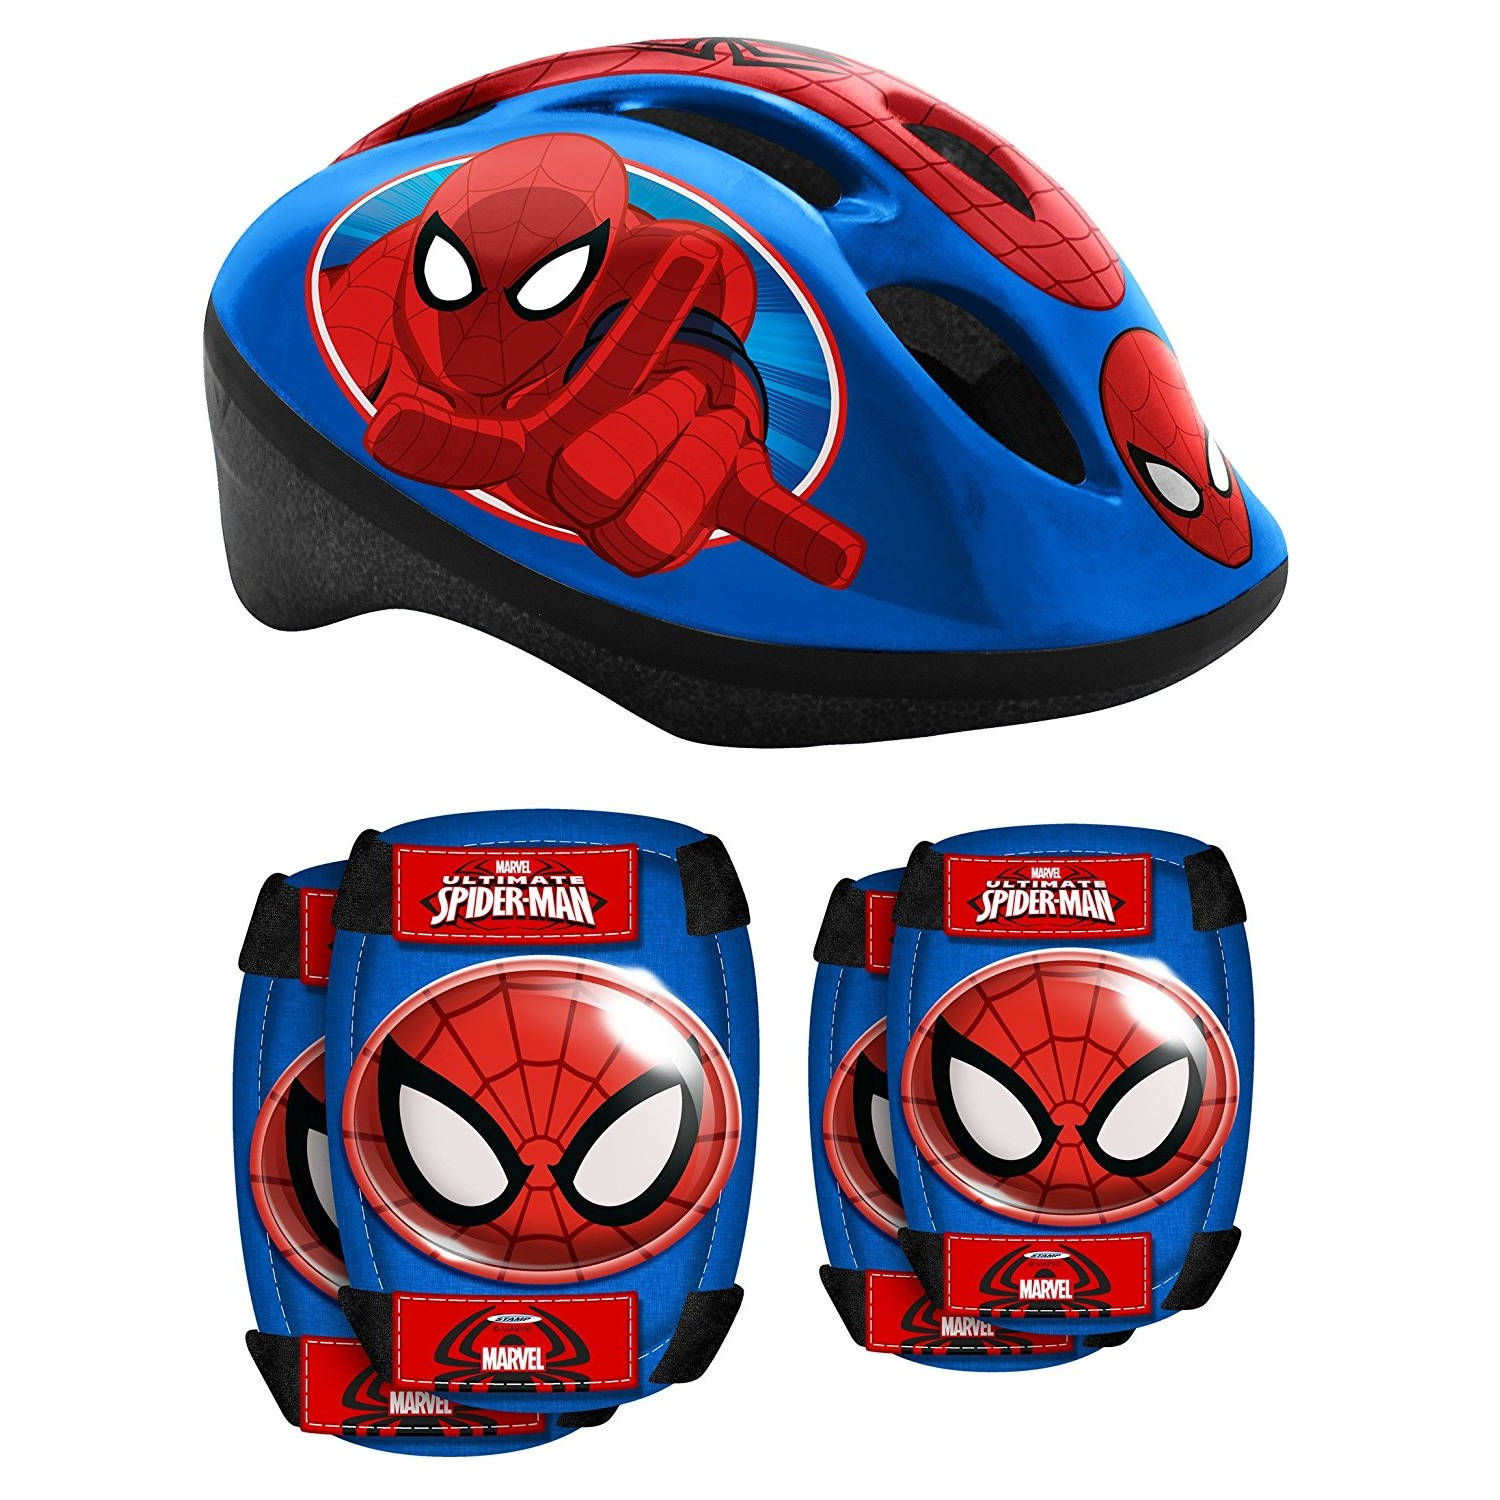 Spider-Man Helmet & Saftyset